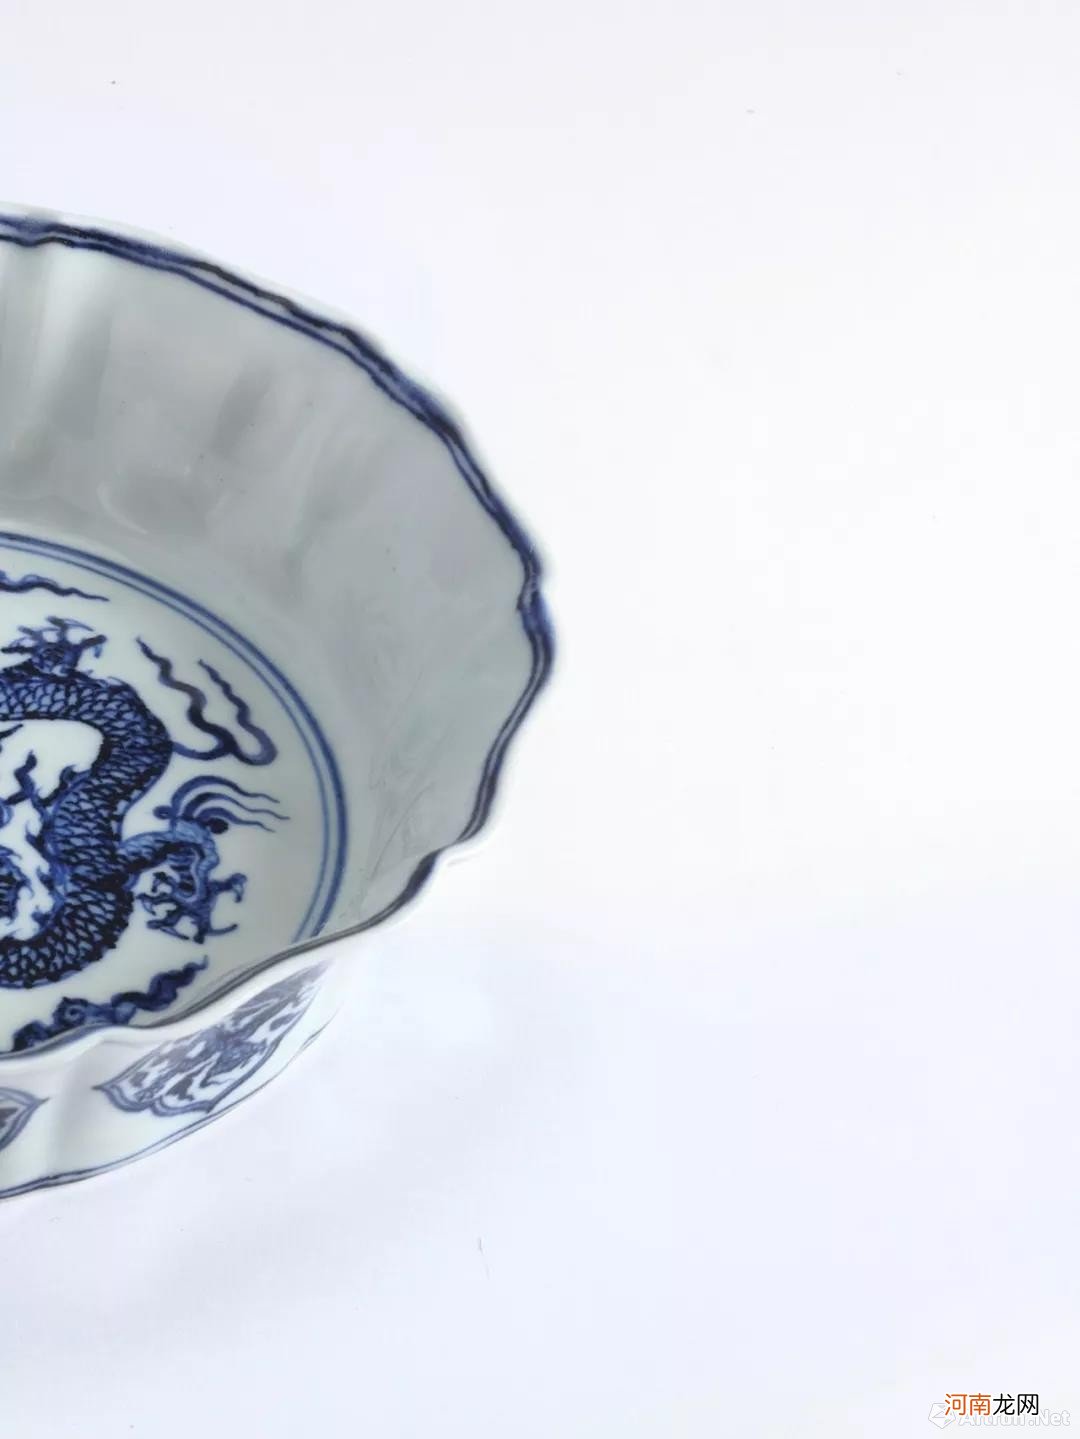 北京保利秋拍的大明宣德年制瓷器 大明宣德年制瓷器价格